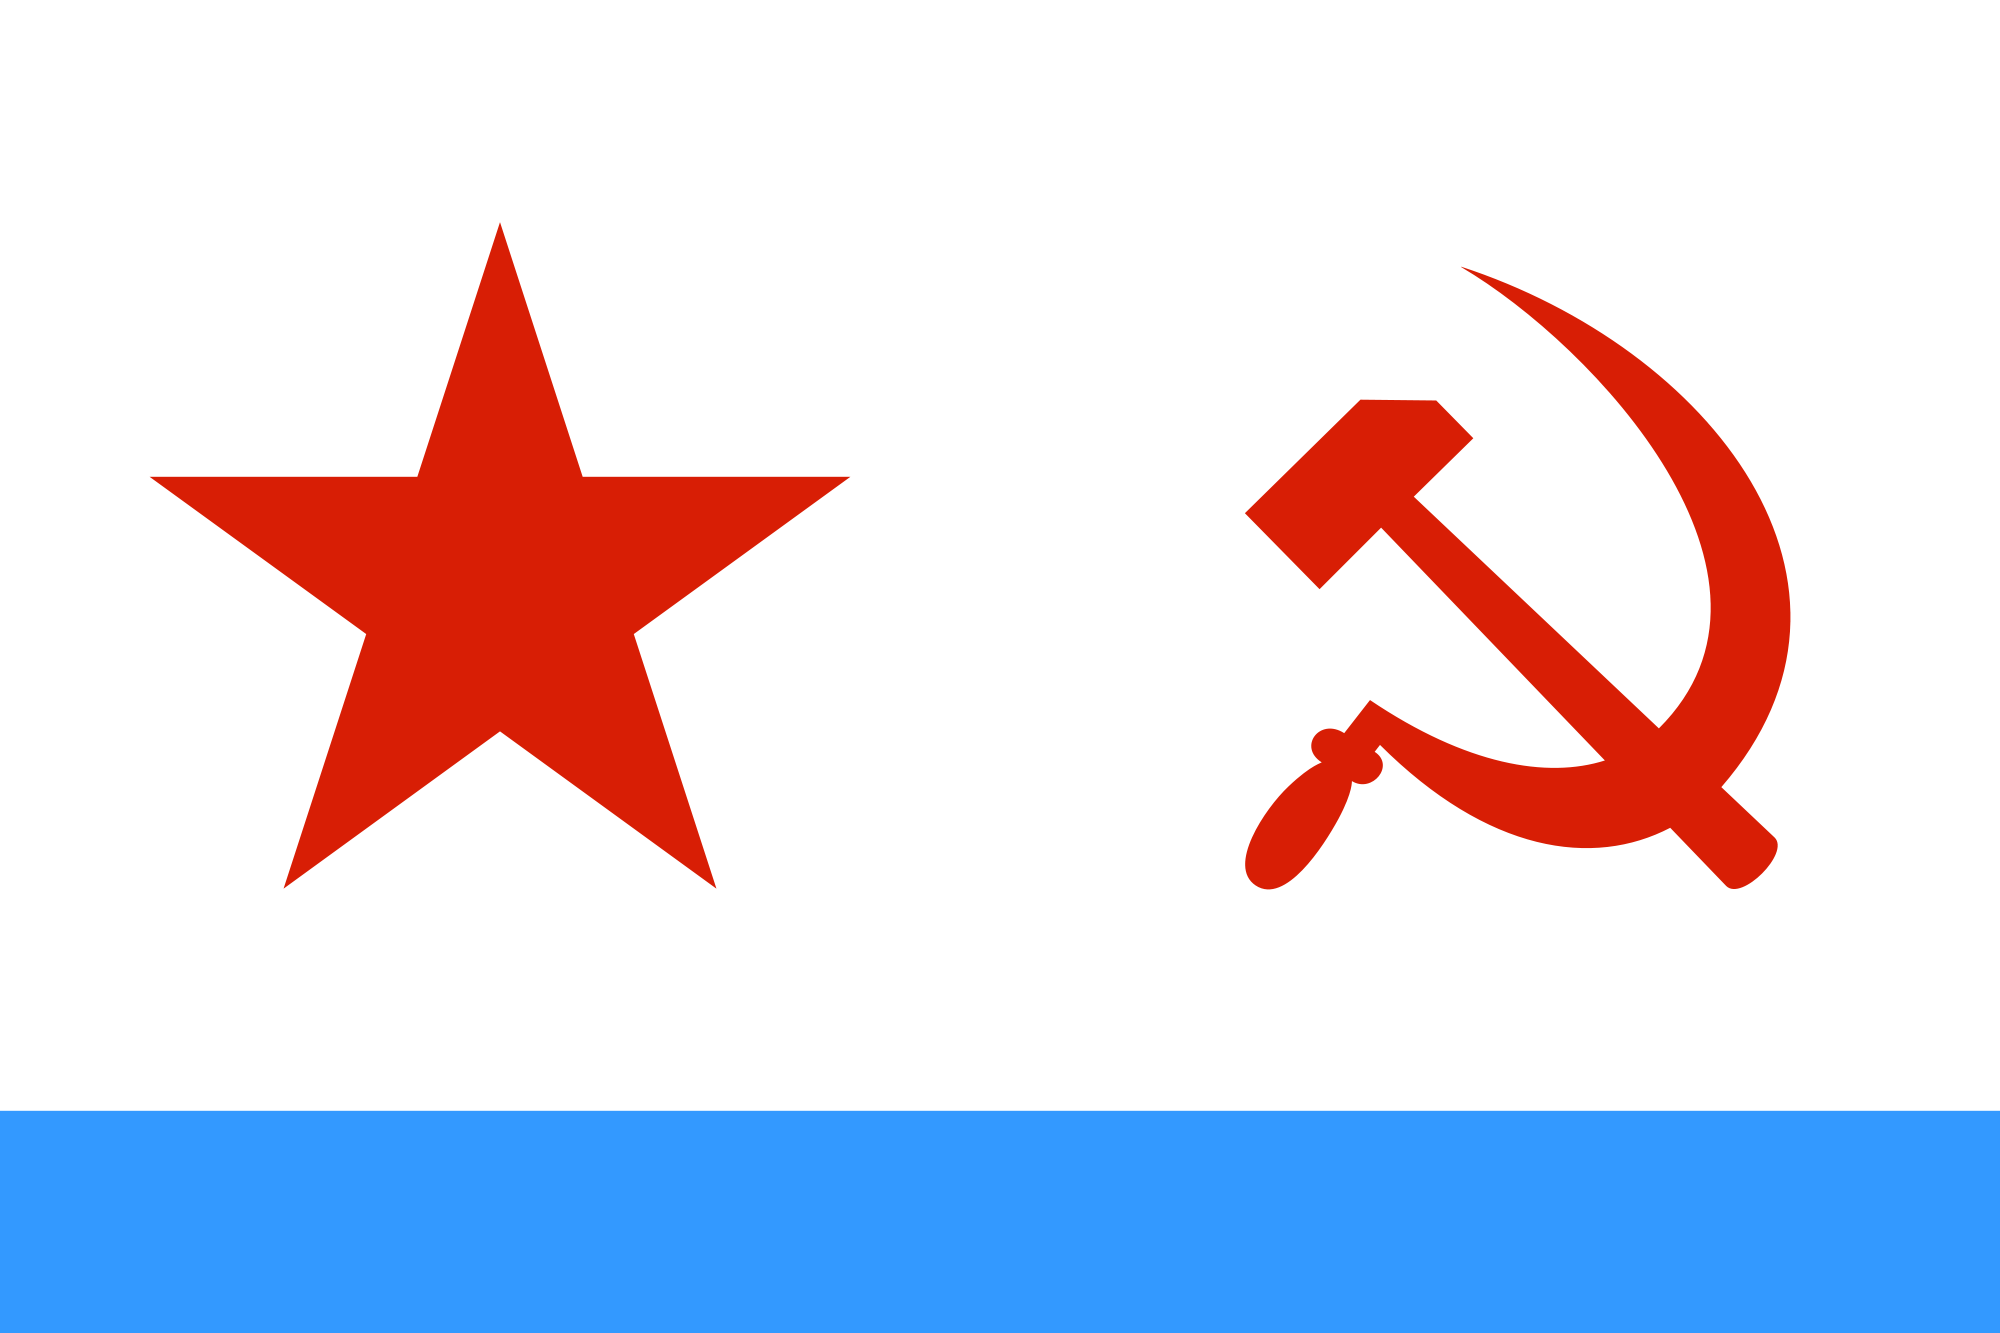 USA and Soviet Symbols